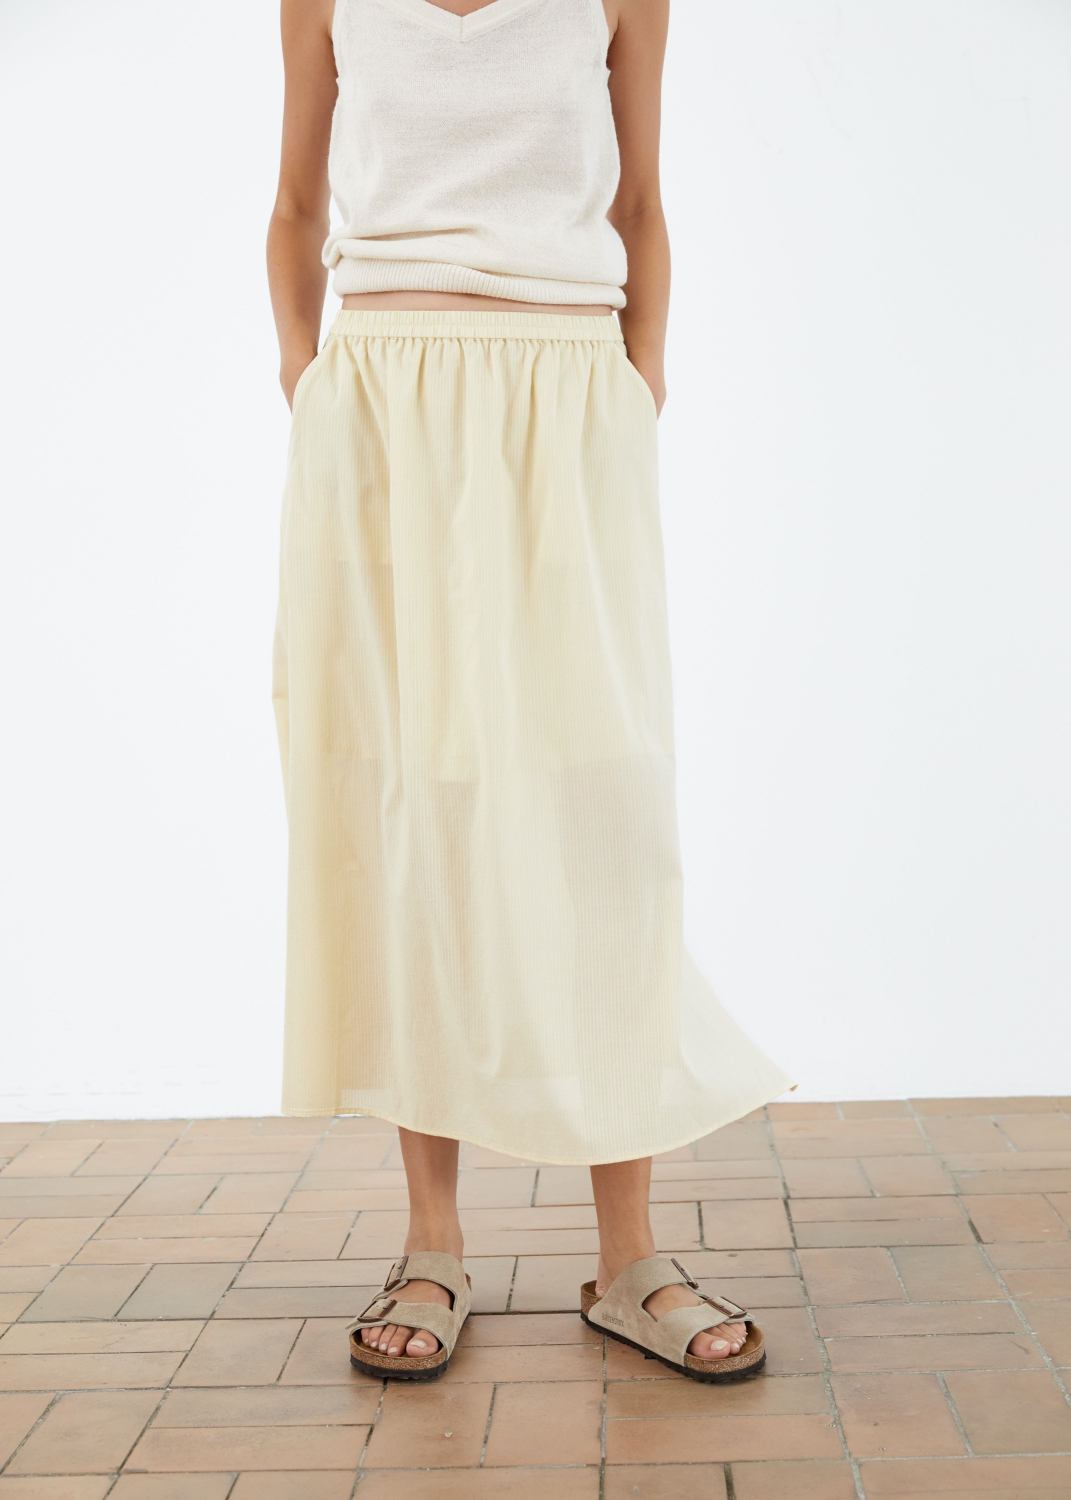 Dresses & Skirts - Long Skirt Line